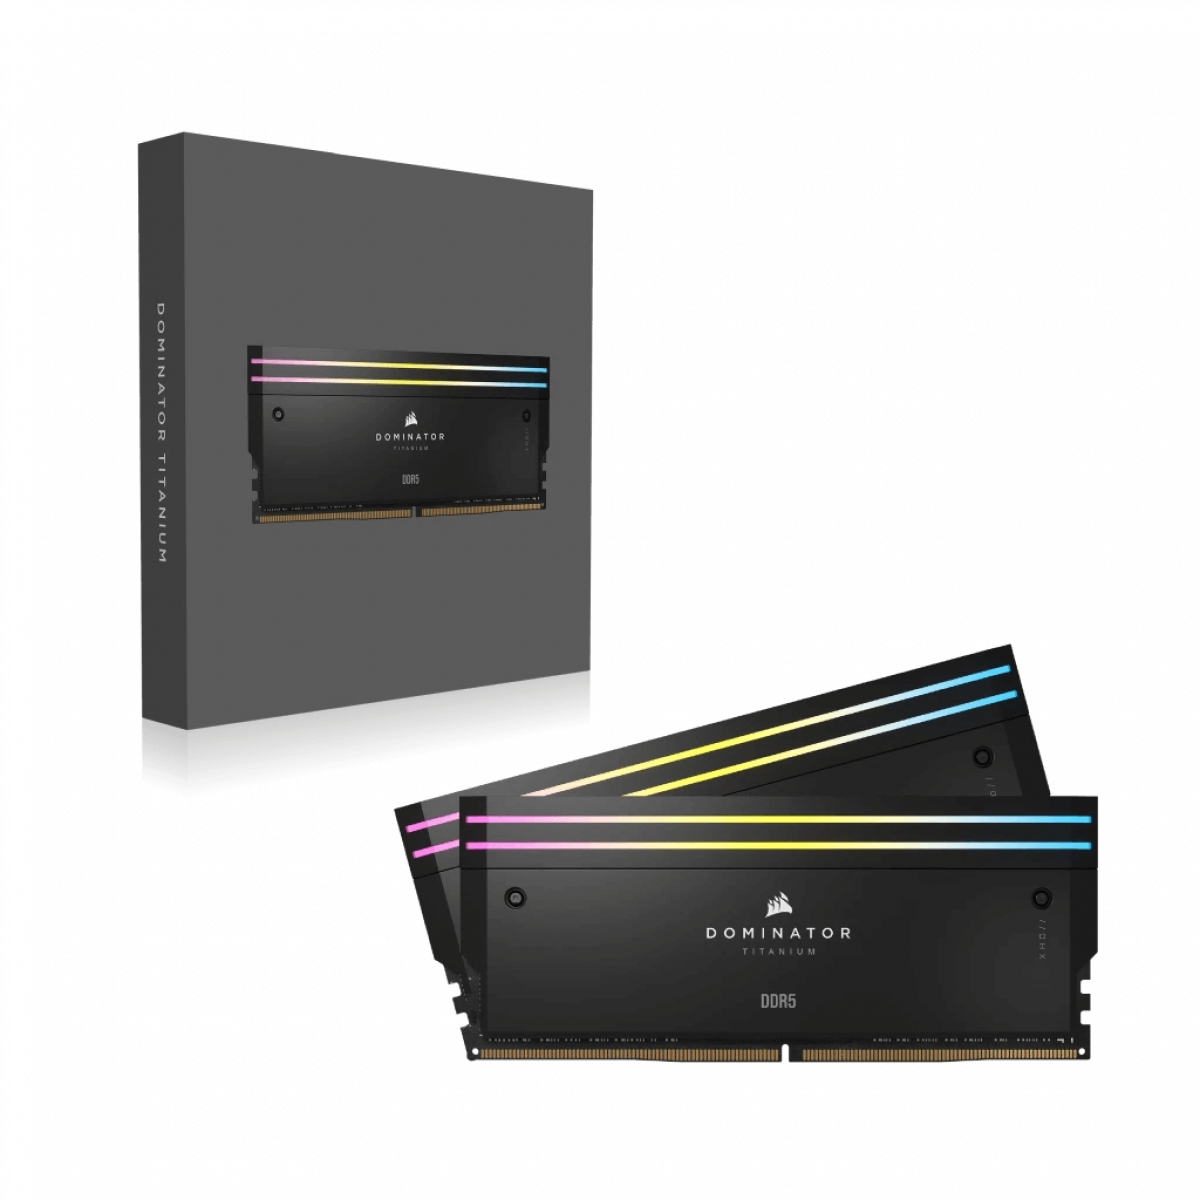 RAM DOMINATOR TITANIUM Black HeatspreaderDDR5, 7000MT/s 48GB 2x24GB DIMM, XMP 3.0, RGB LED, 1.4V